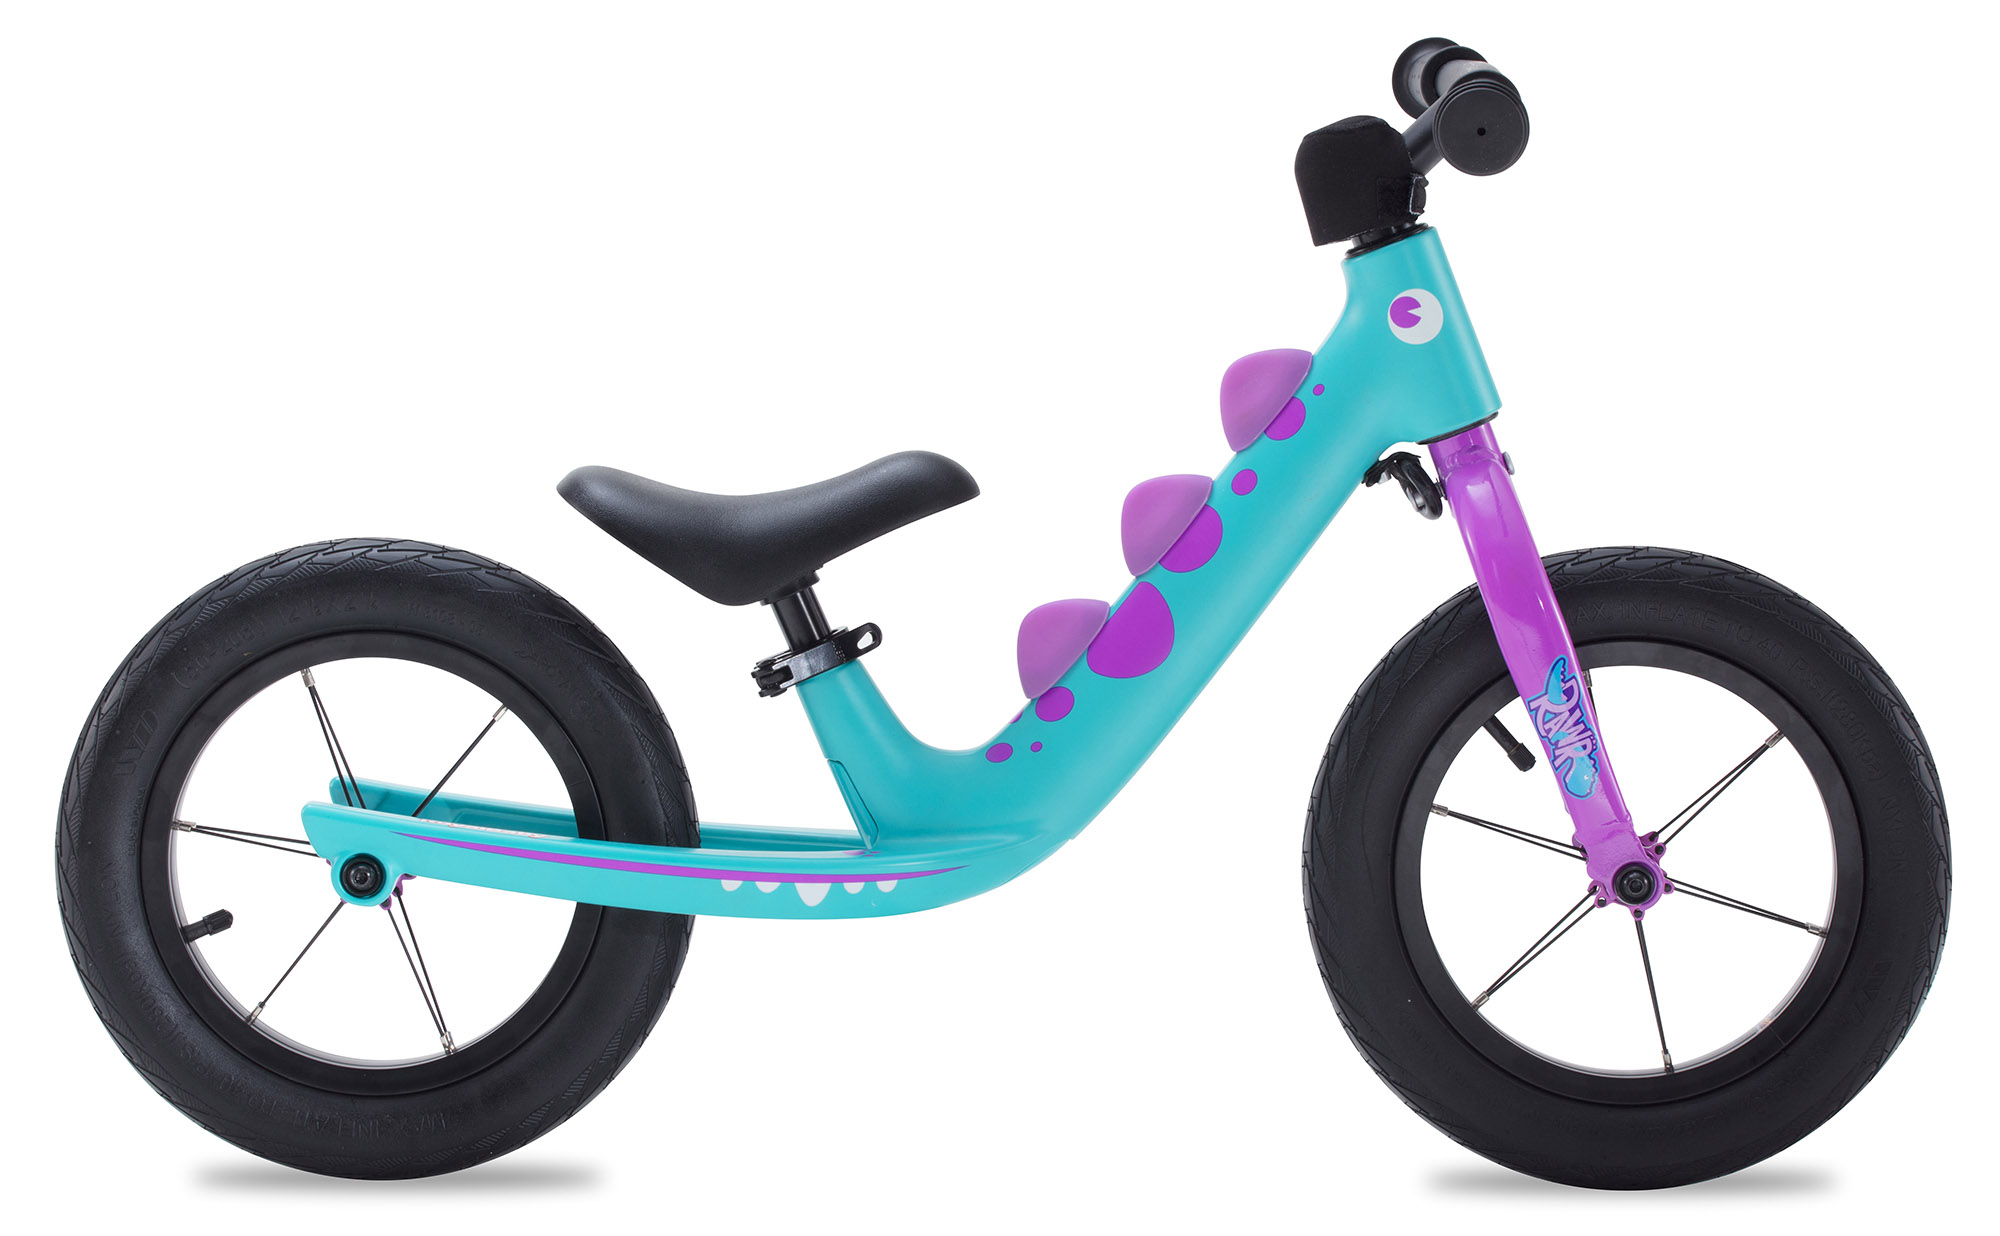  Отзывы о Детском велосипеде Royal Baby Rawr Air 12 (2021) 2021